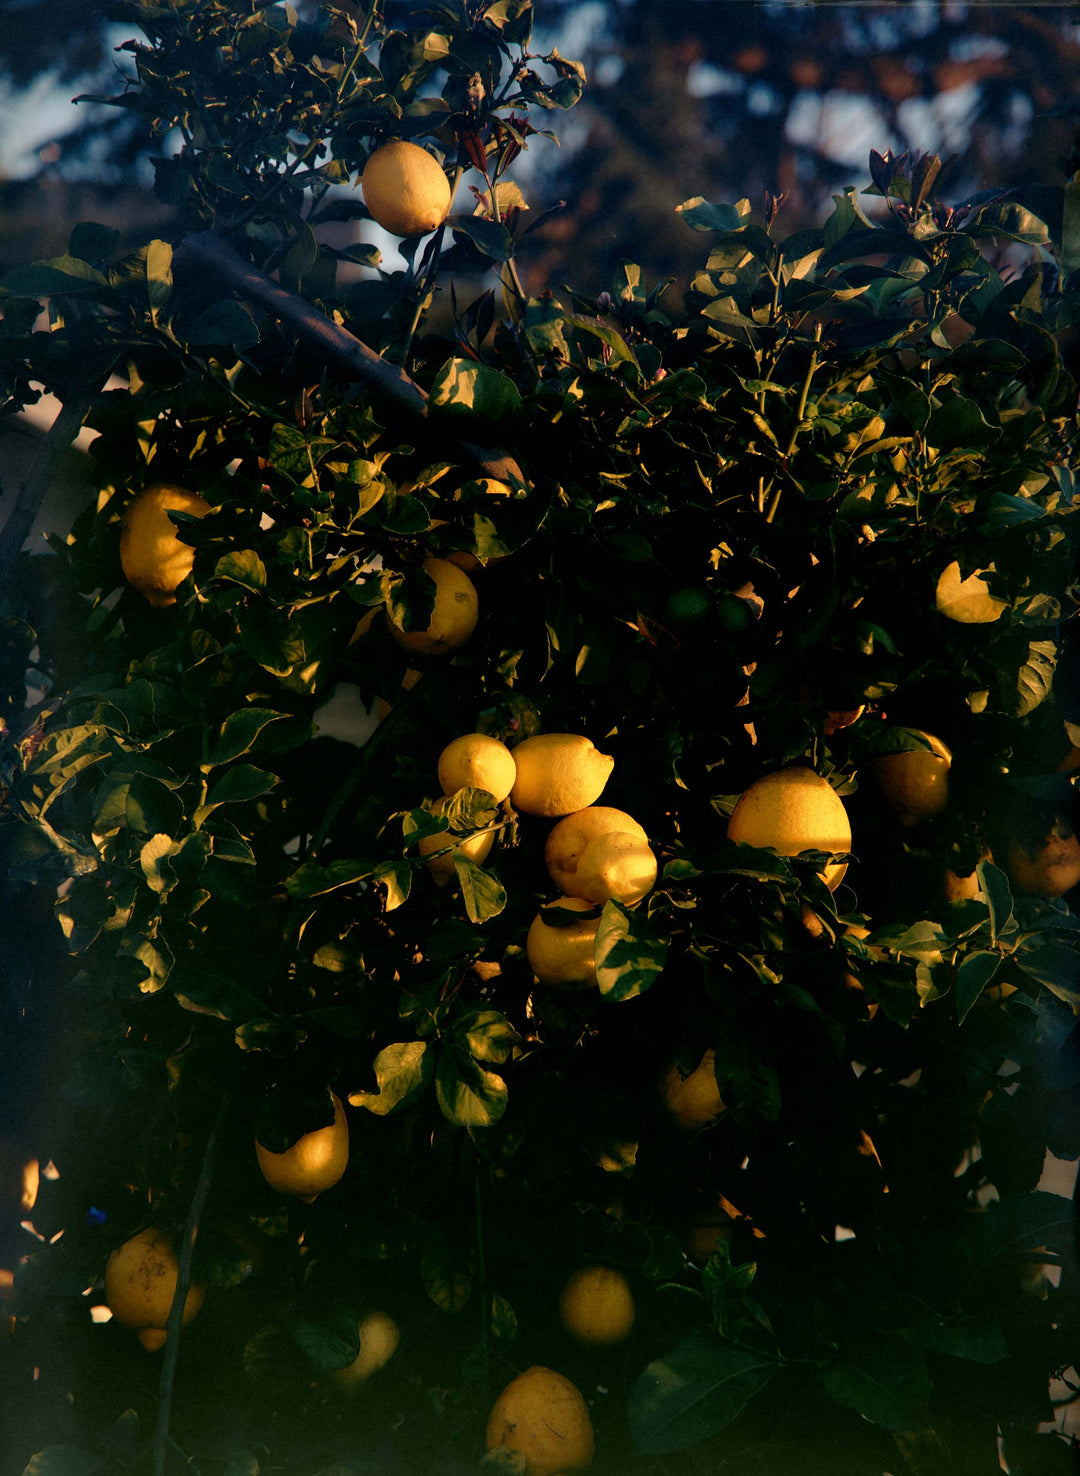 a lemon tree with fruits